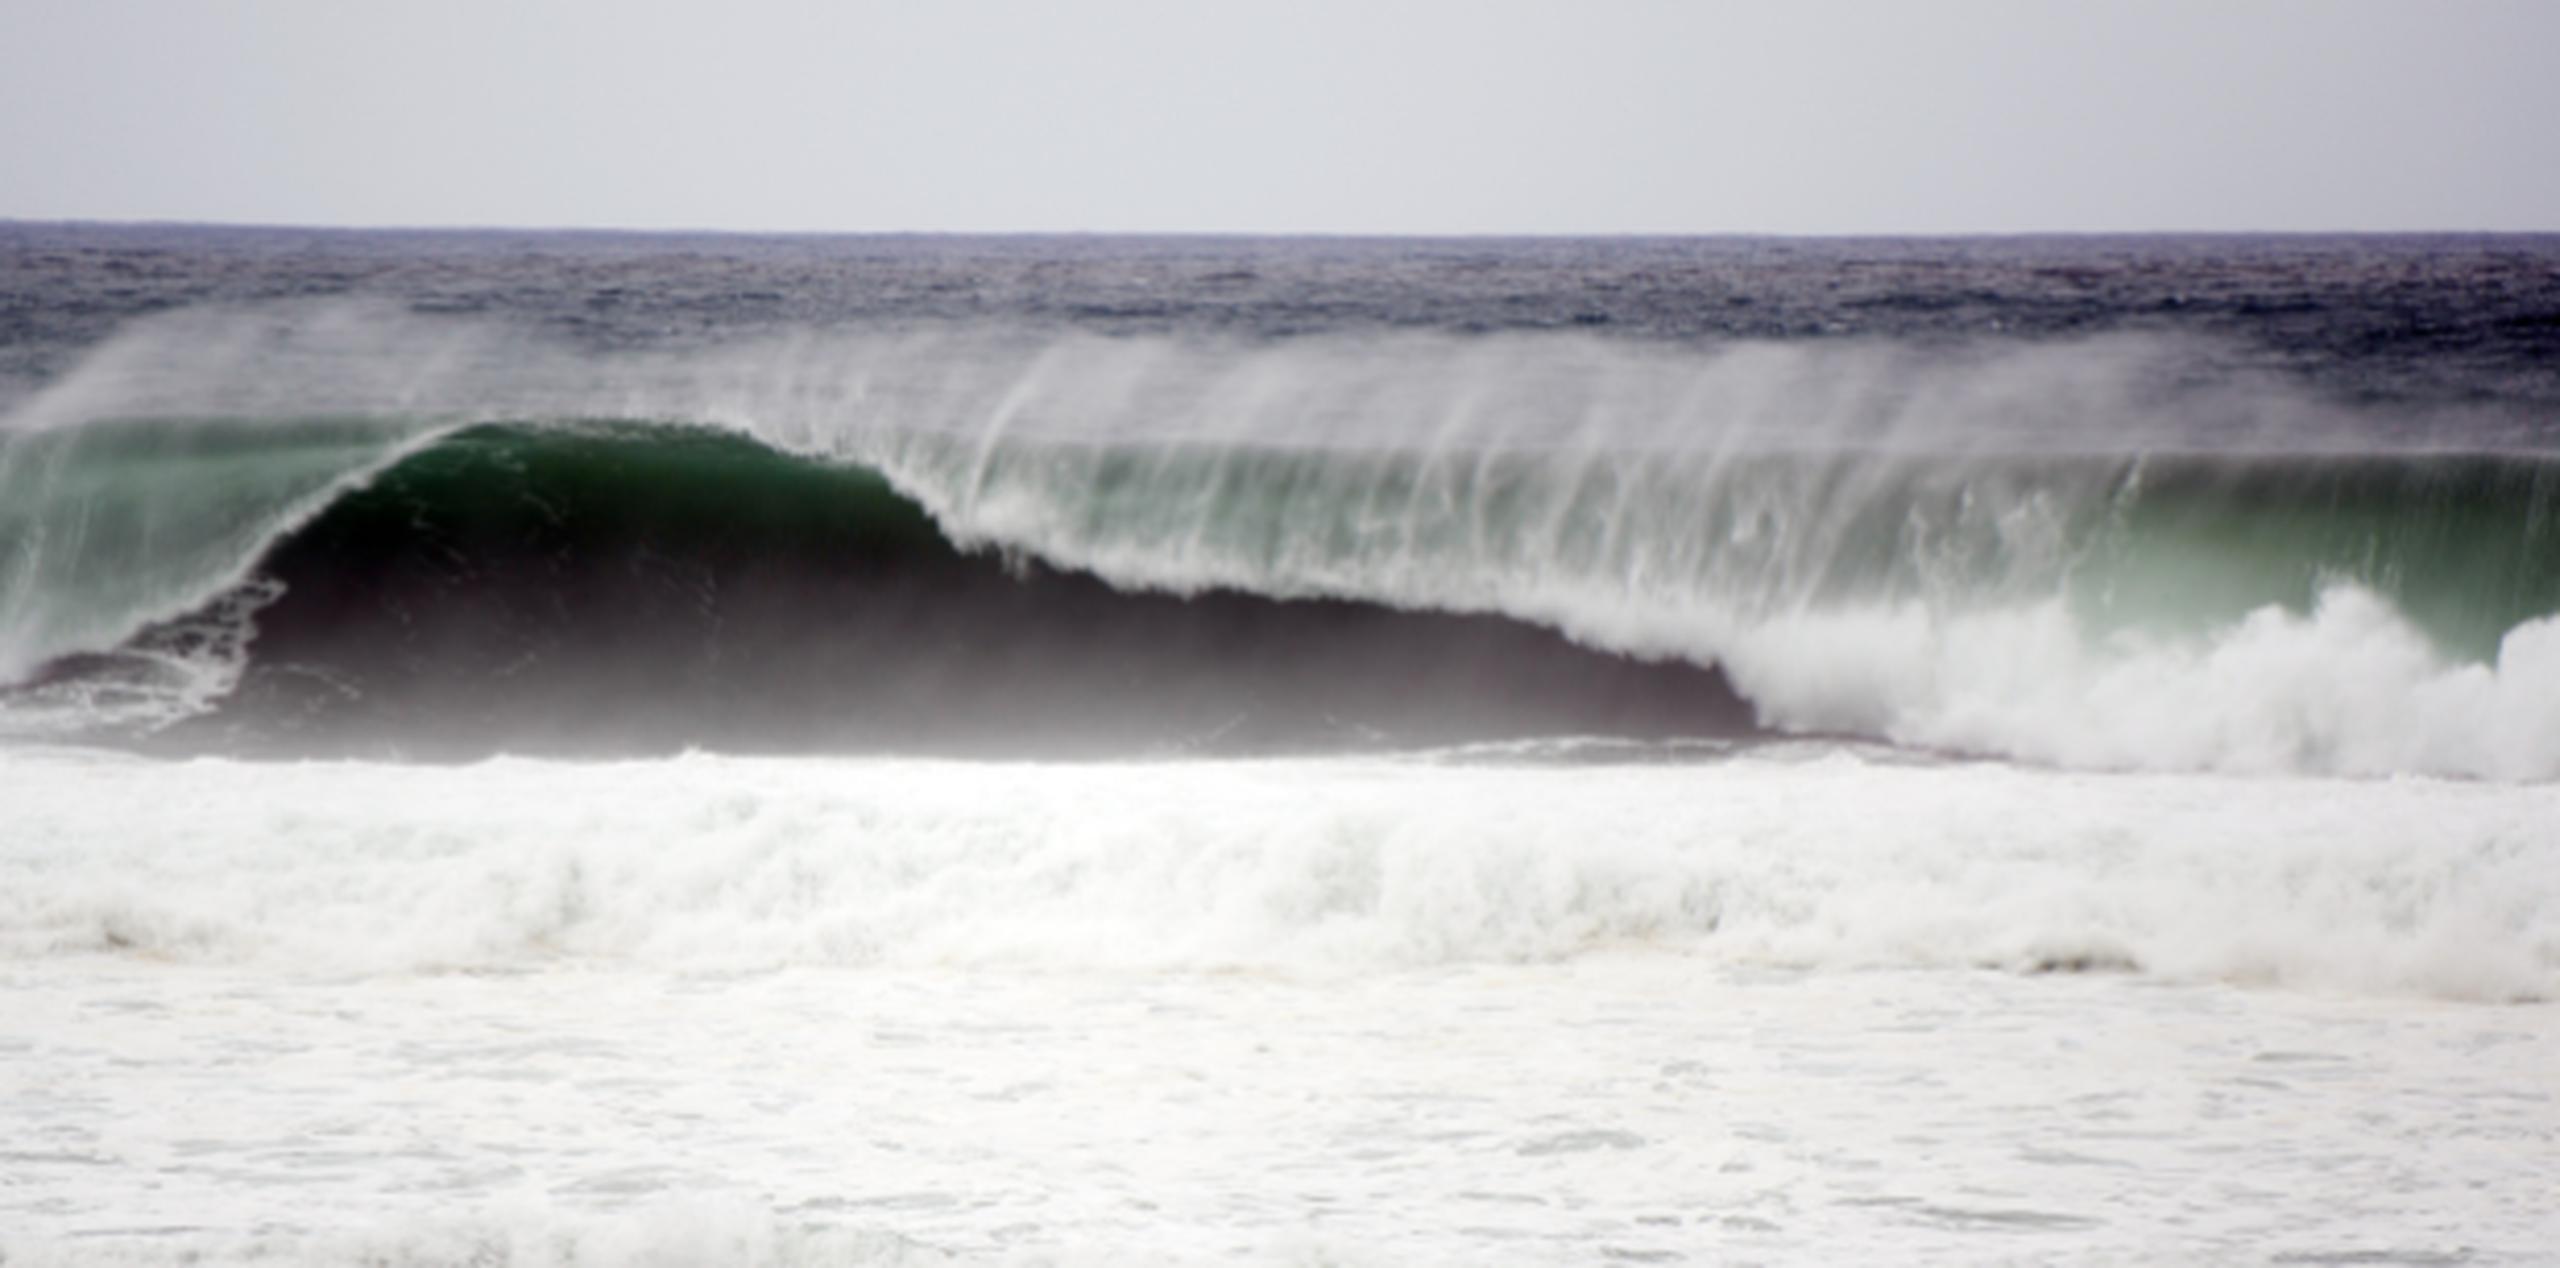 Las fuertes olas seguirán azotando hoy. (LUIS.ALCALADELOLMO@GFRMEDIA.COM)